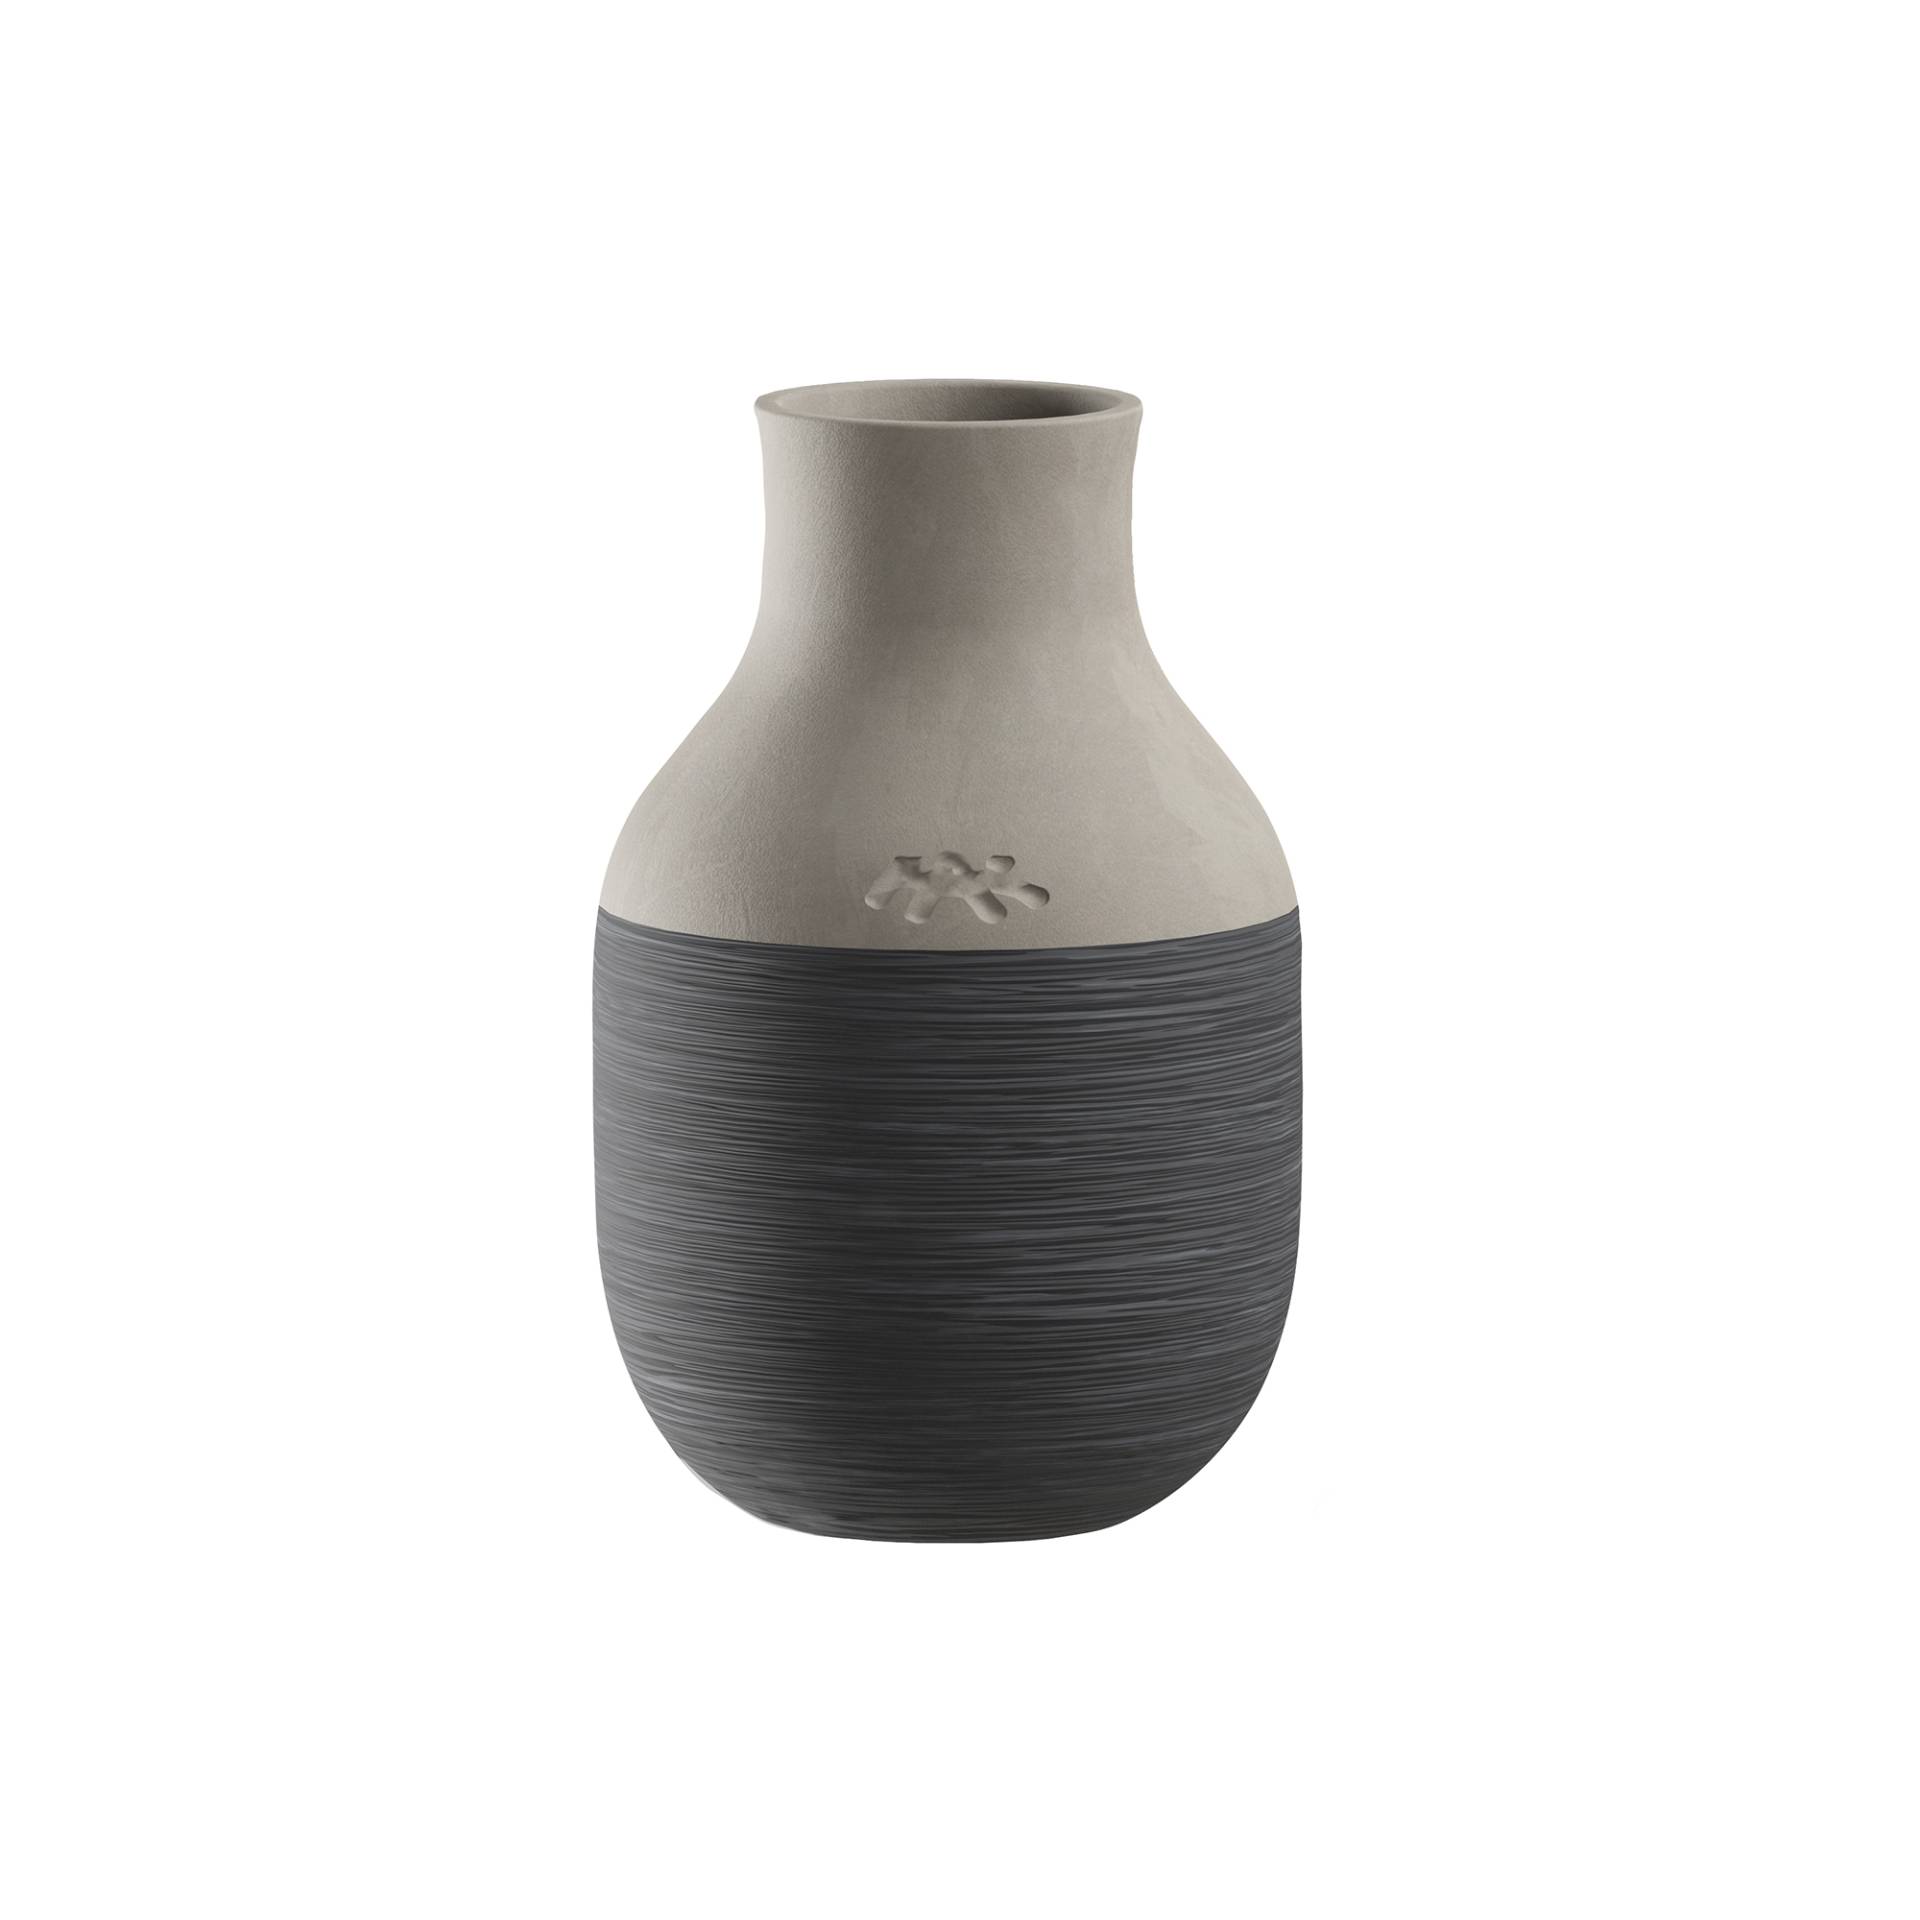 Kähler - Omaggio Circulare Vase H 12,5cm - anthrazit/hellgrau/H 12,5cm / Ø 8cm/Jedes Stück ein Unikat von Kähler